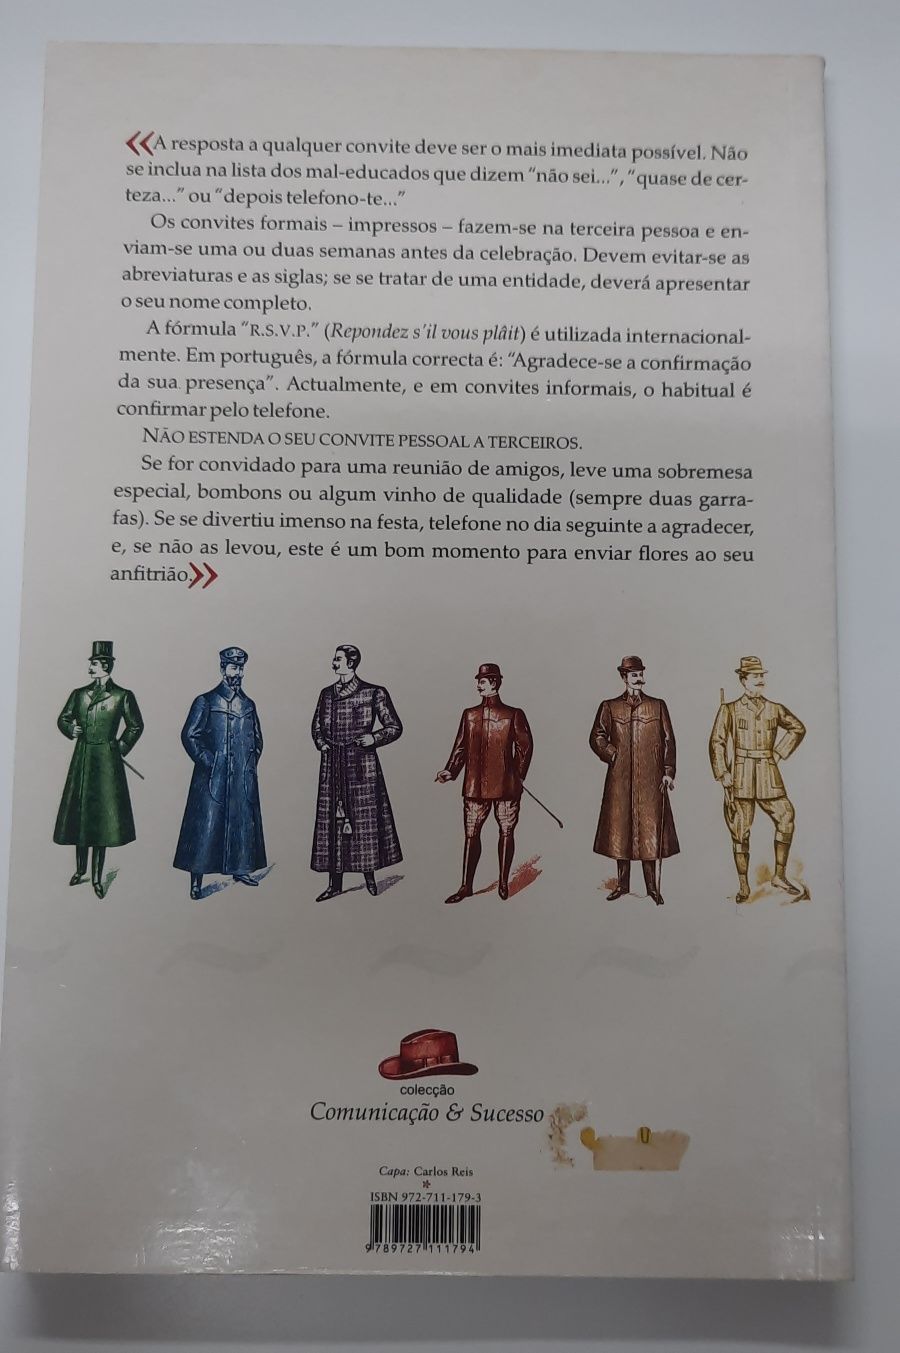 Livro: "Guia Indispensável para Homens", de Cristina Bosco